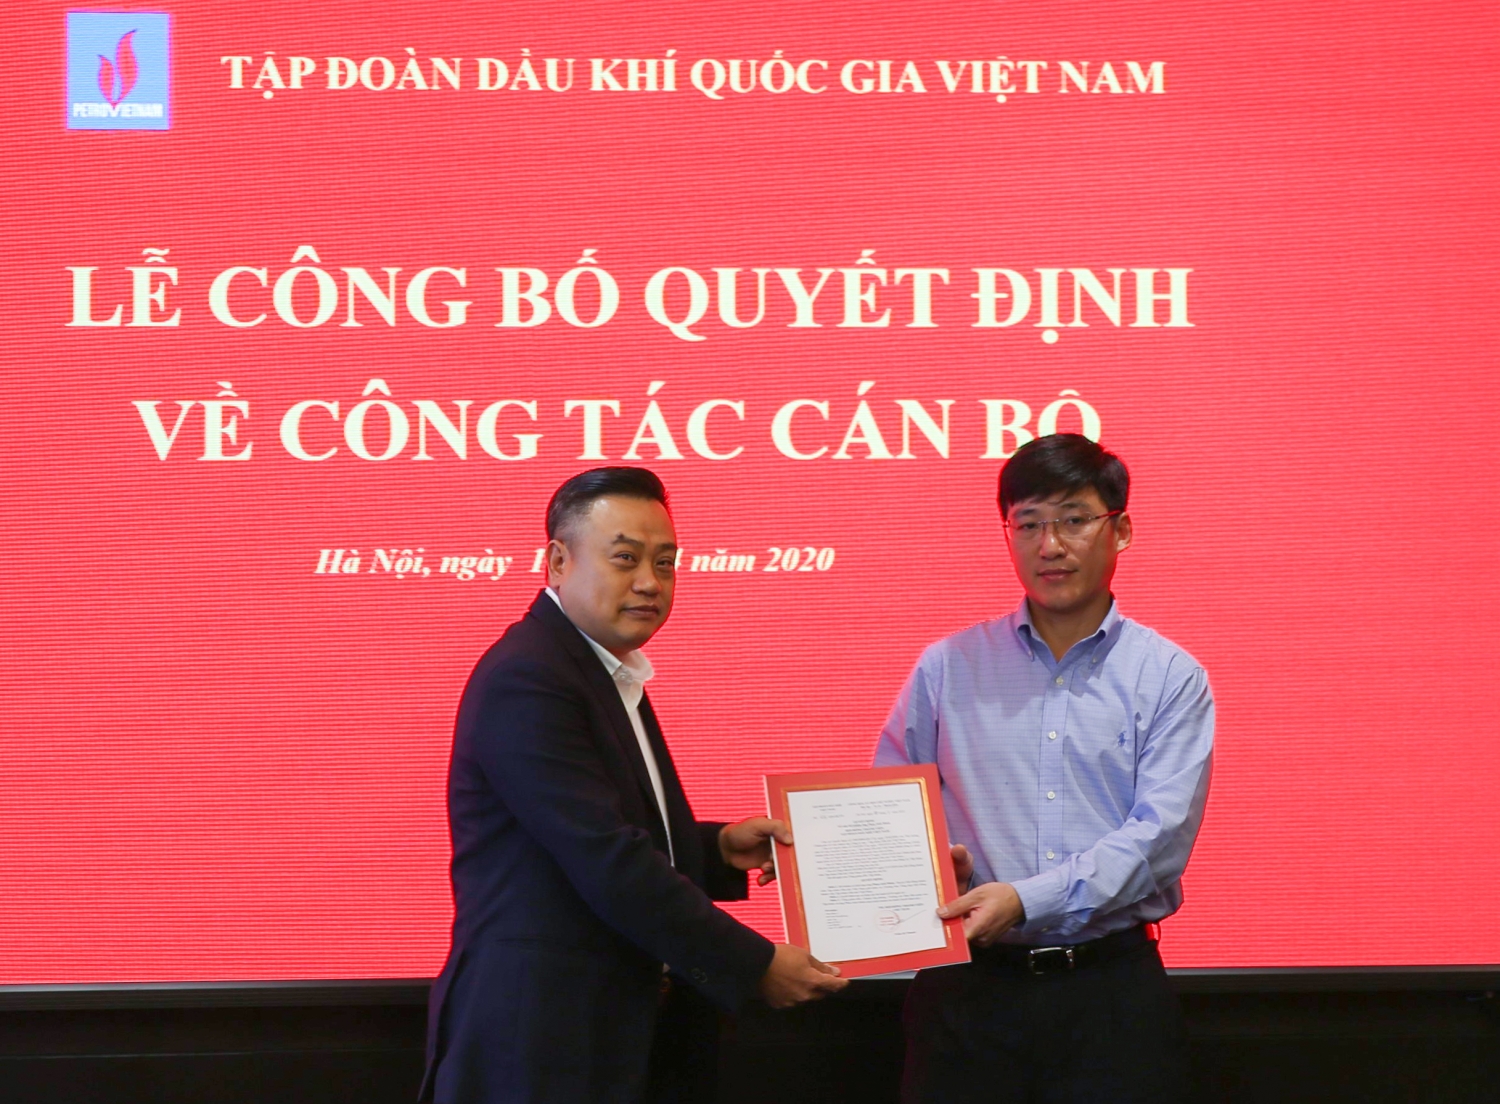 Bổ nhiệm lãnh đạo Ban Tổng hợp Tập đoàn Dầu khí Việt Nam